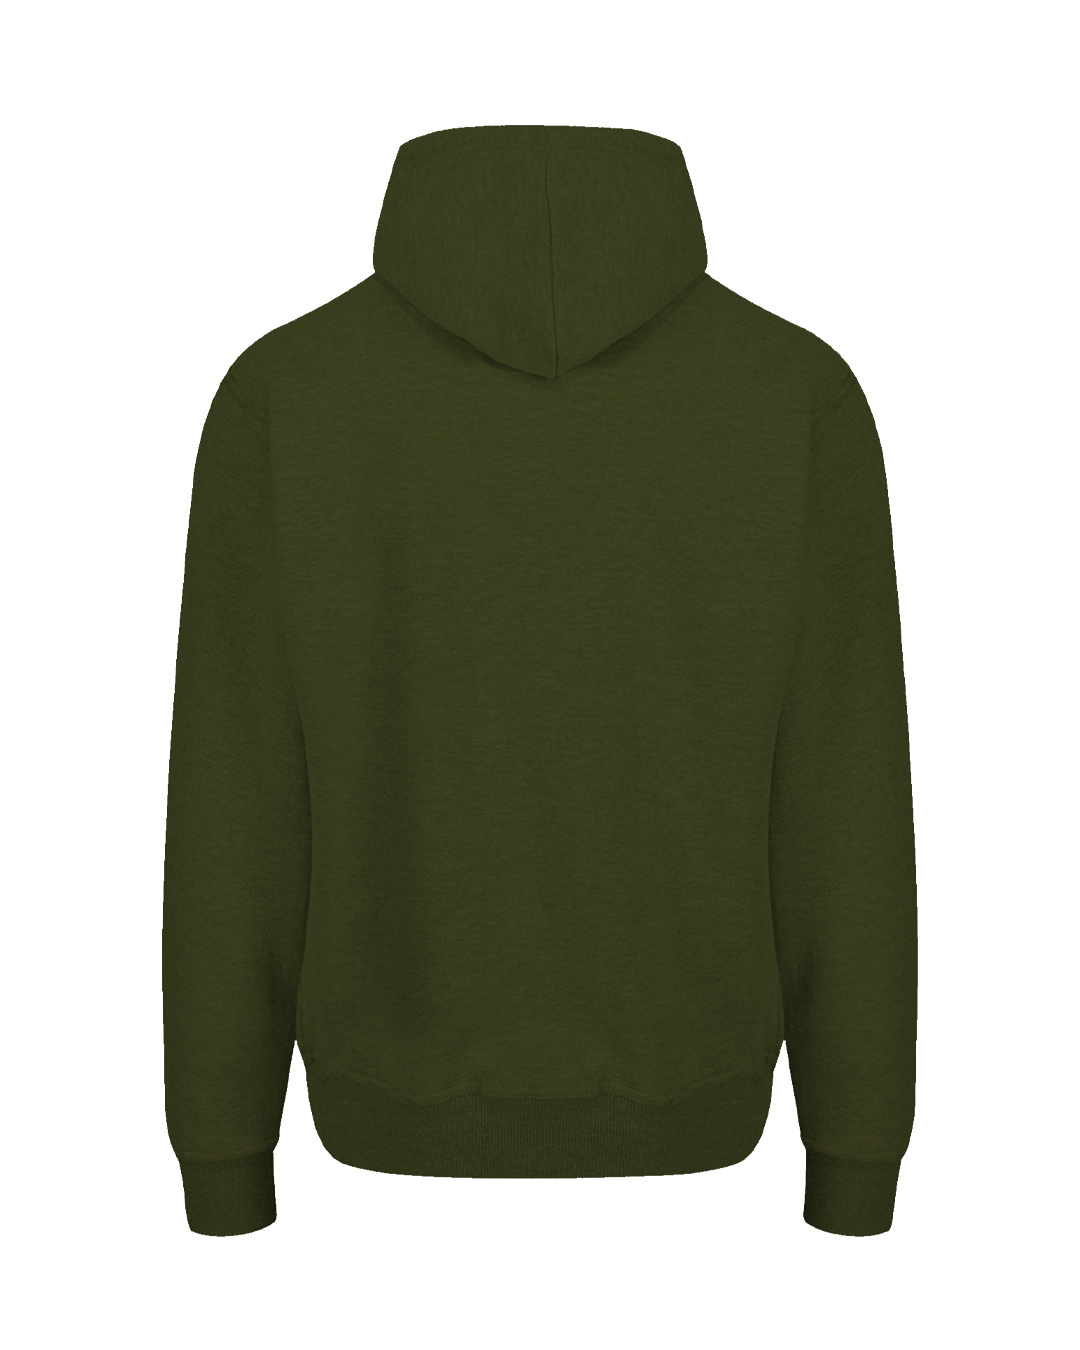 Shop Olive Green Hoodie Sweatshirt-Back